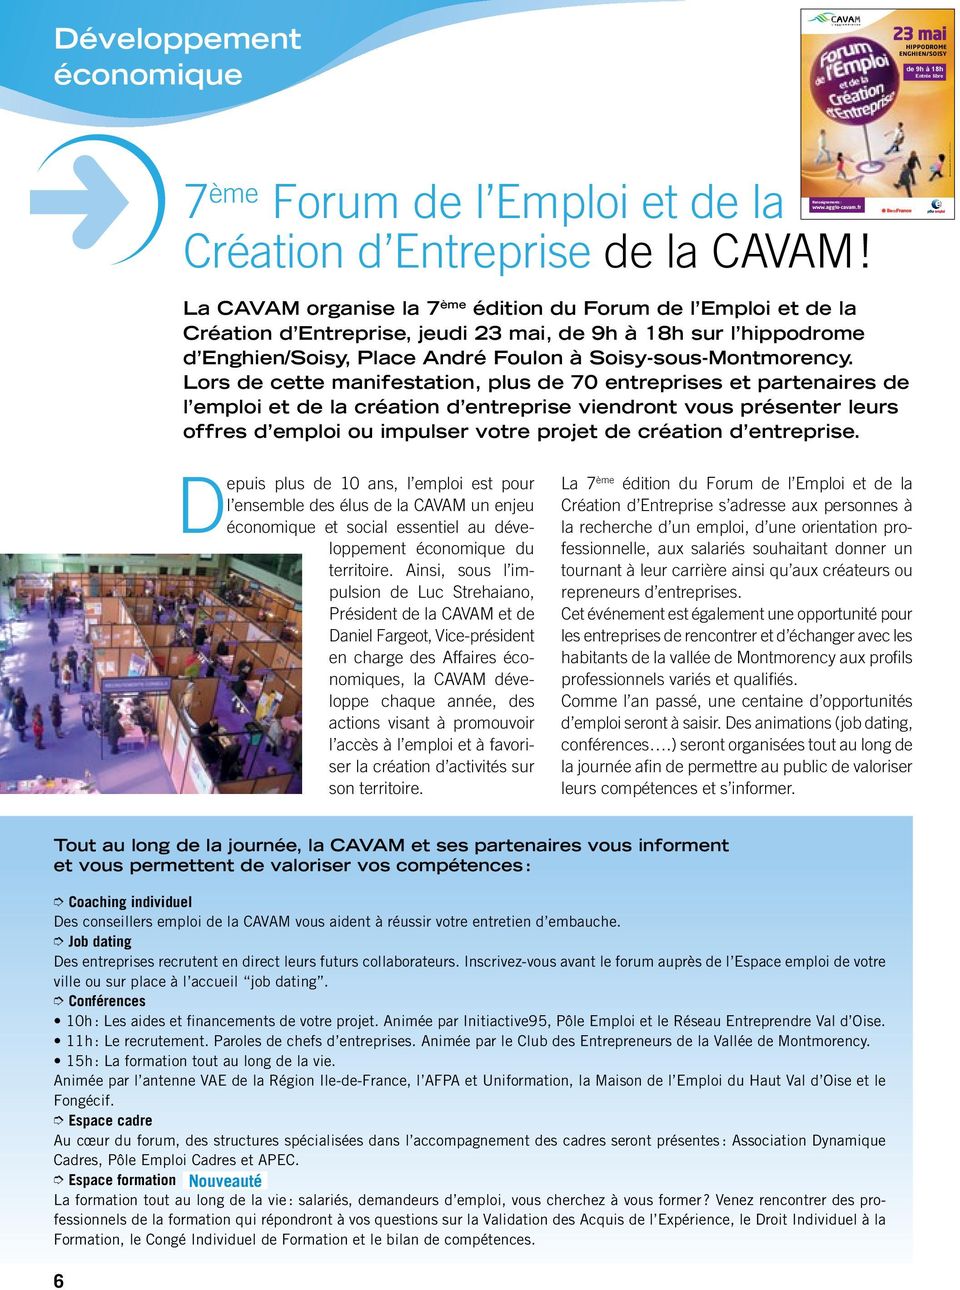 fr - AIRE - 51005 - mars 2013 - ThinkStock La CAVAM organise la 7 ème édition du Forum de l Emploi et de la Création d Entreprise, jeudi 23 mai, de 9h à 18h sur l hippodrome d Enghien/Soisy, Place